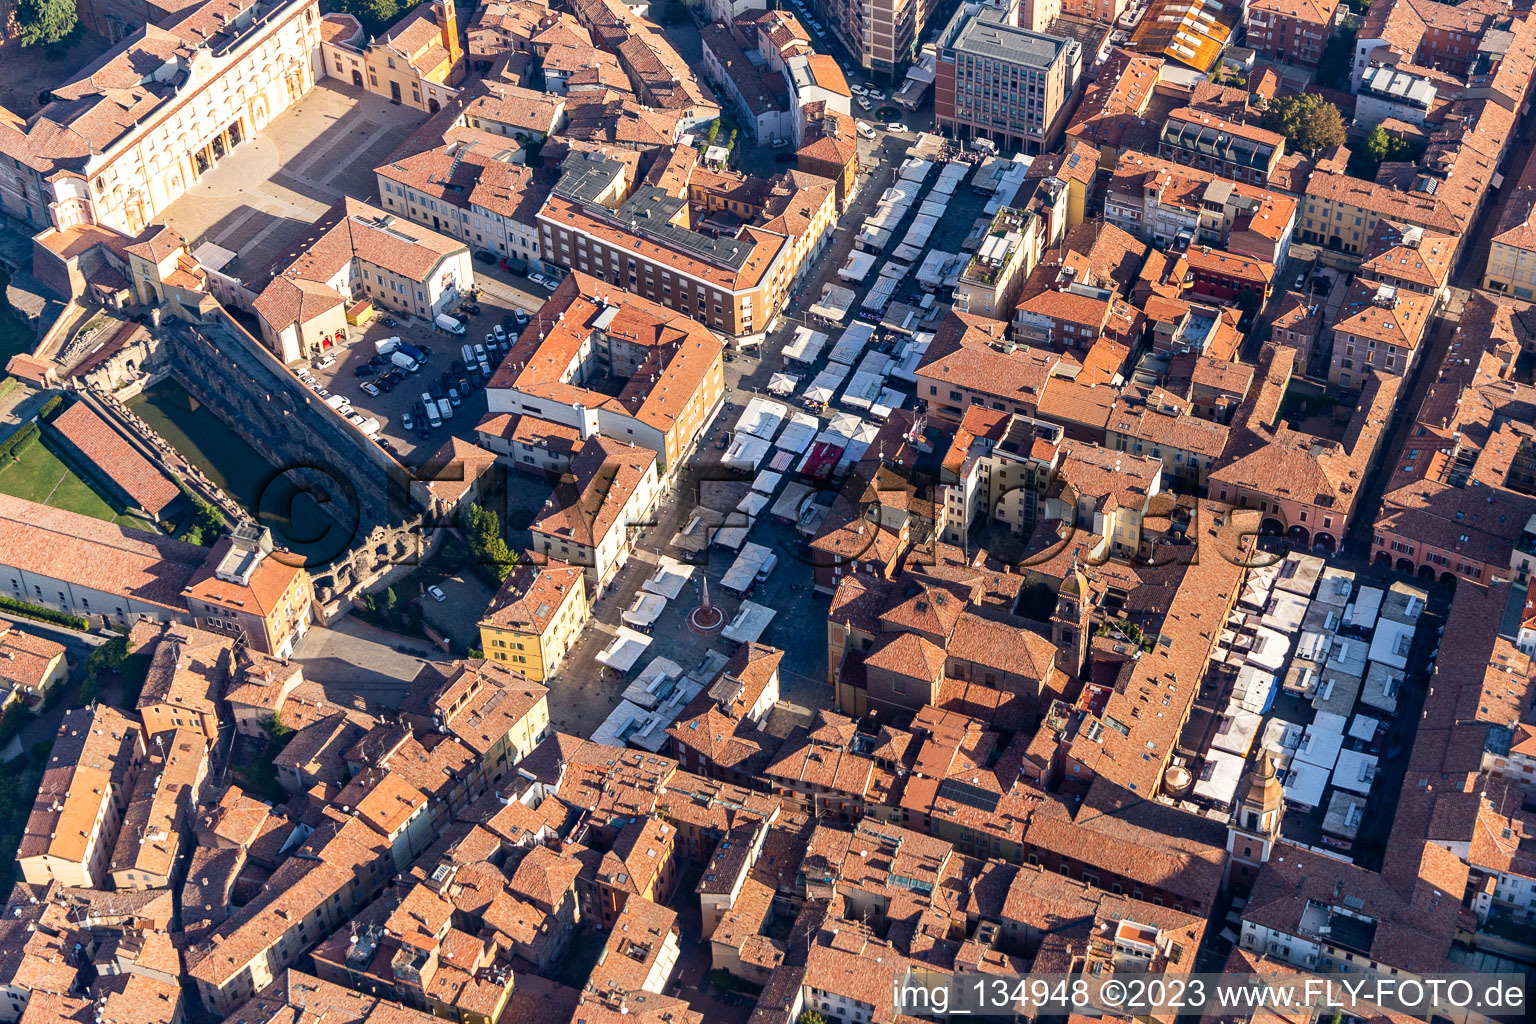 Vue aérienne de Marché sur la place Martiri à Sassuolo dans le département Modena, Italie